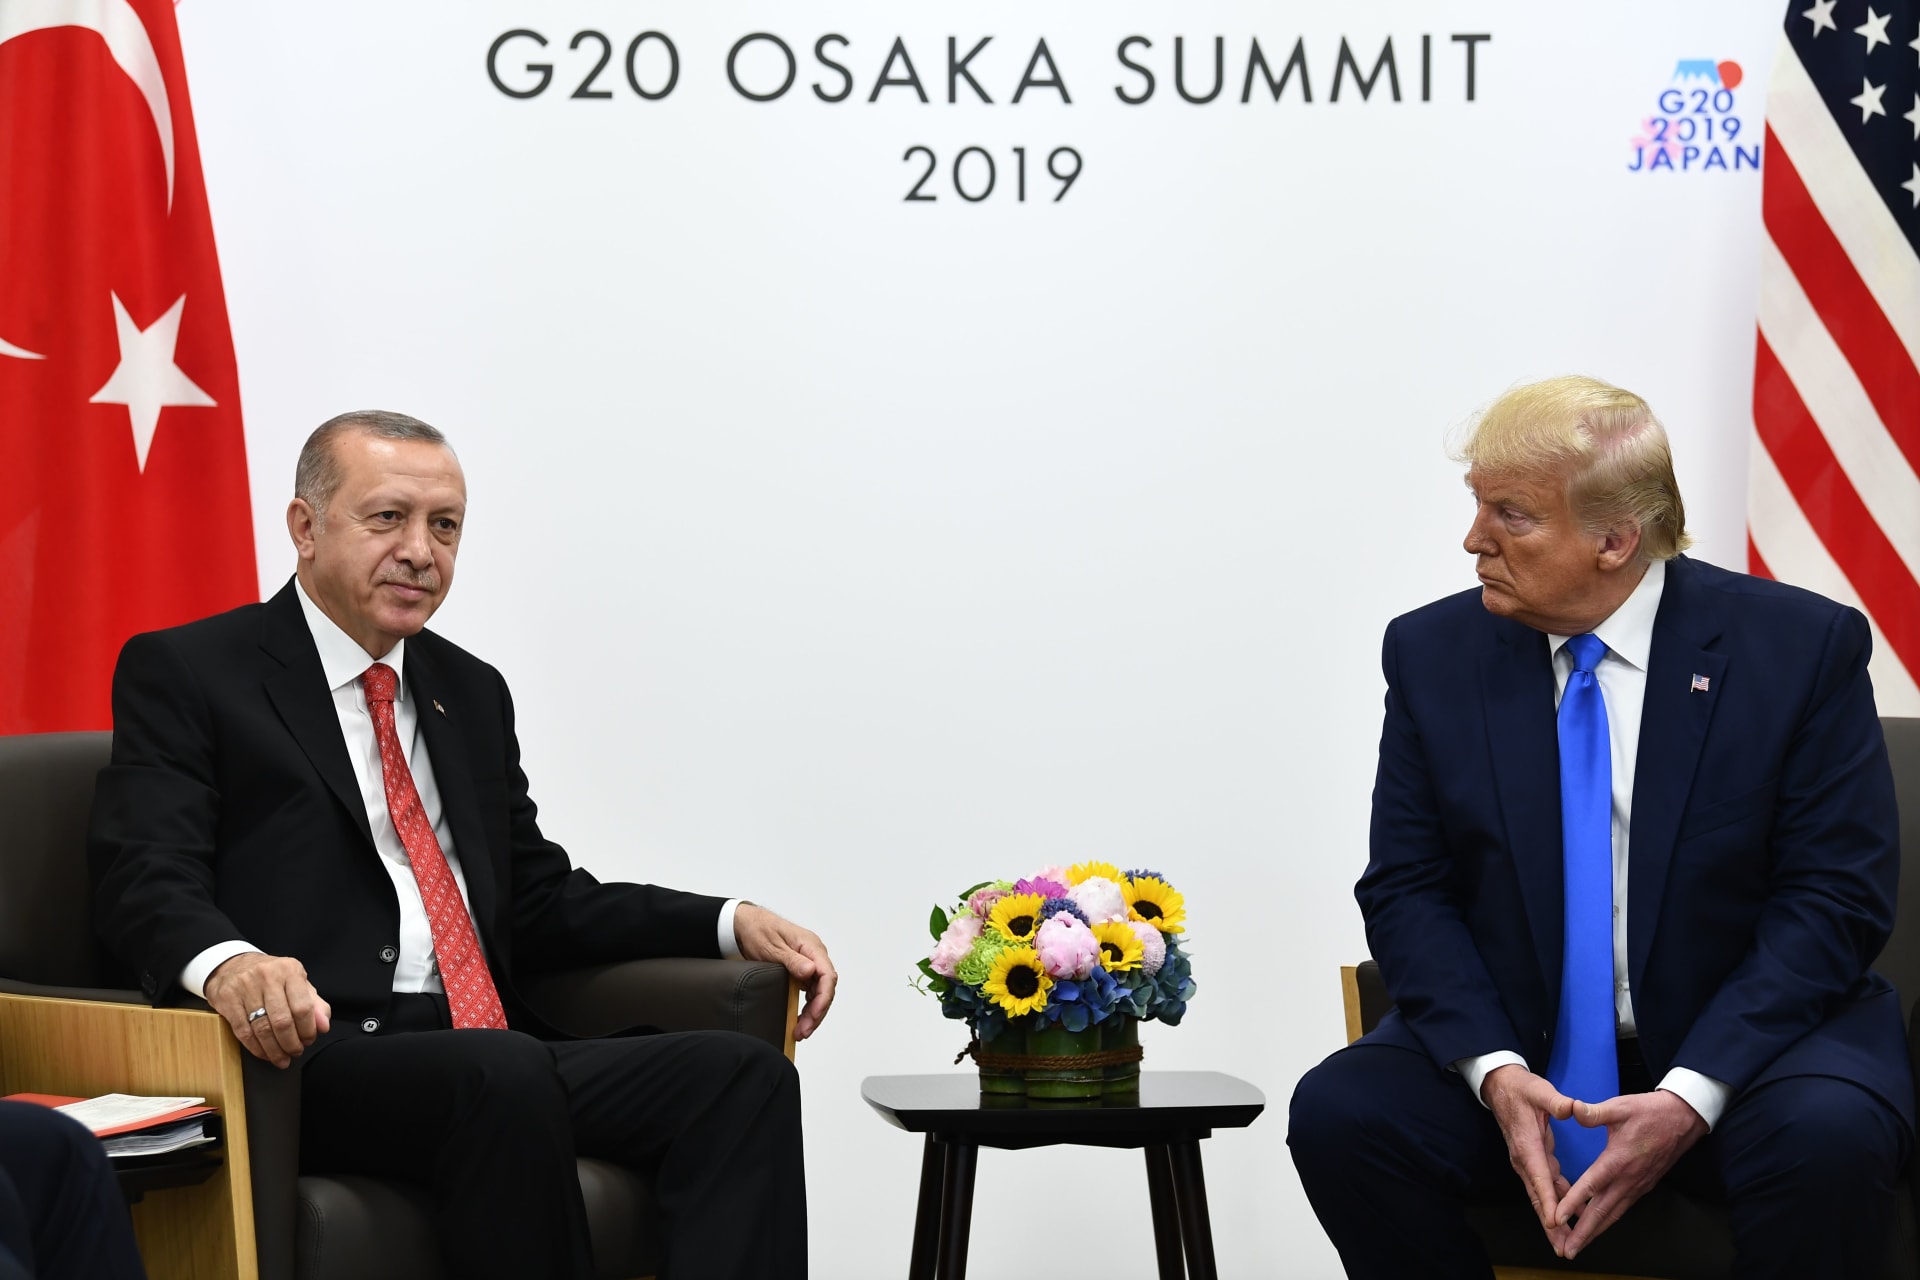 مخاوف وأهداف ومسائل عالقة.. ماذا دار بين ترامب وأردوغان على هامش "قمة الـ20"؟